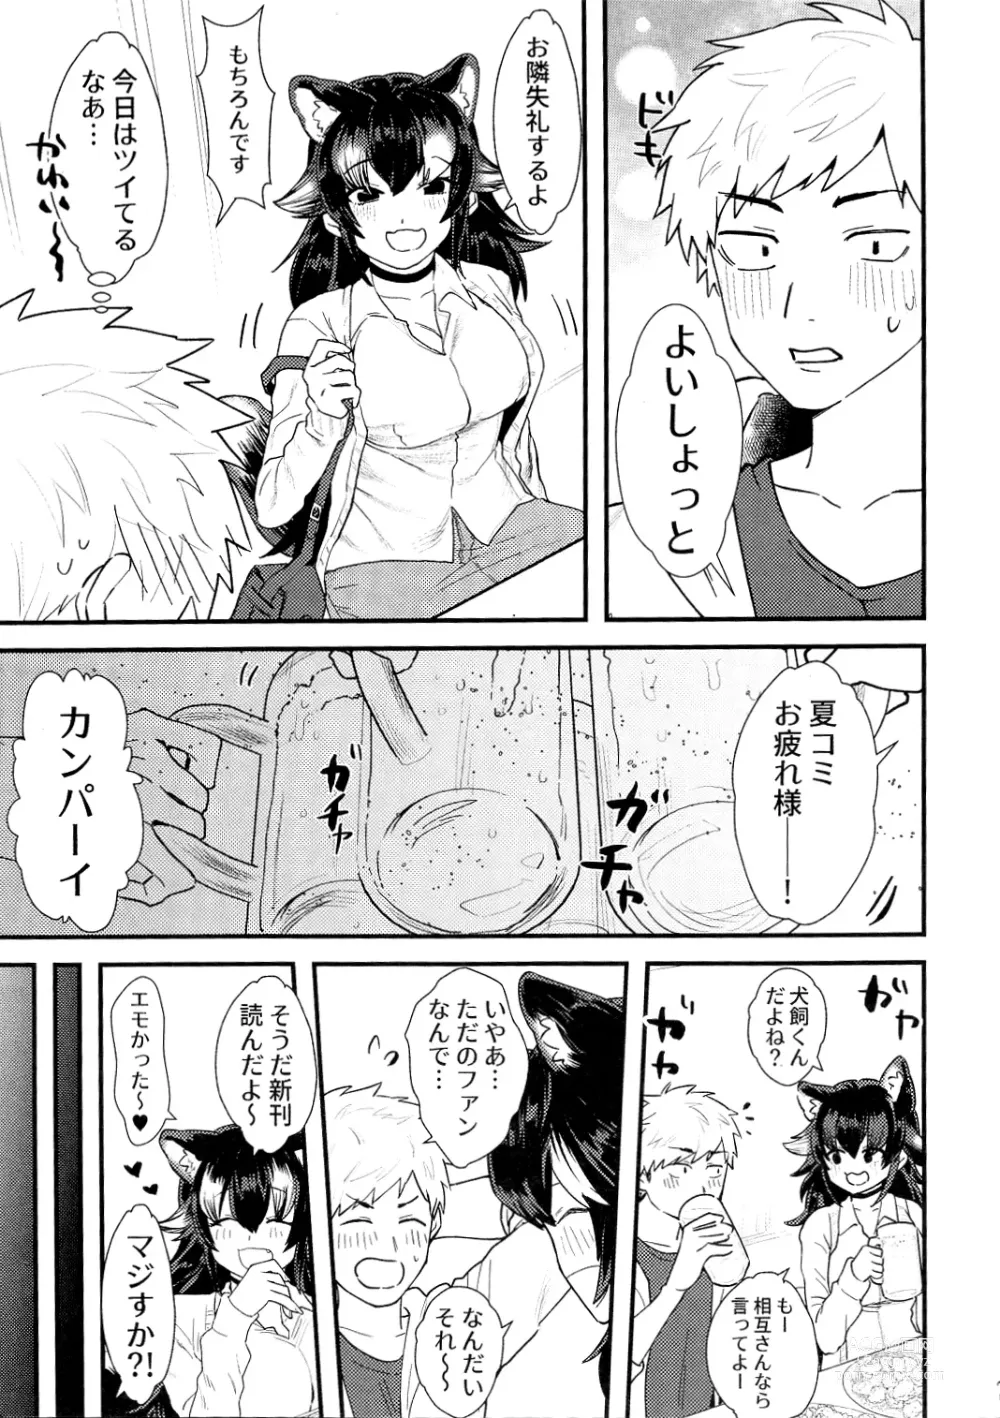 Page 6 of doujinshi Tairiku Ookami Sensei to OffPako Shitai